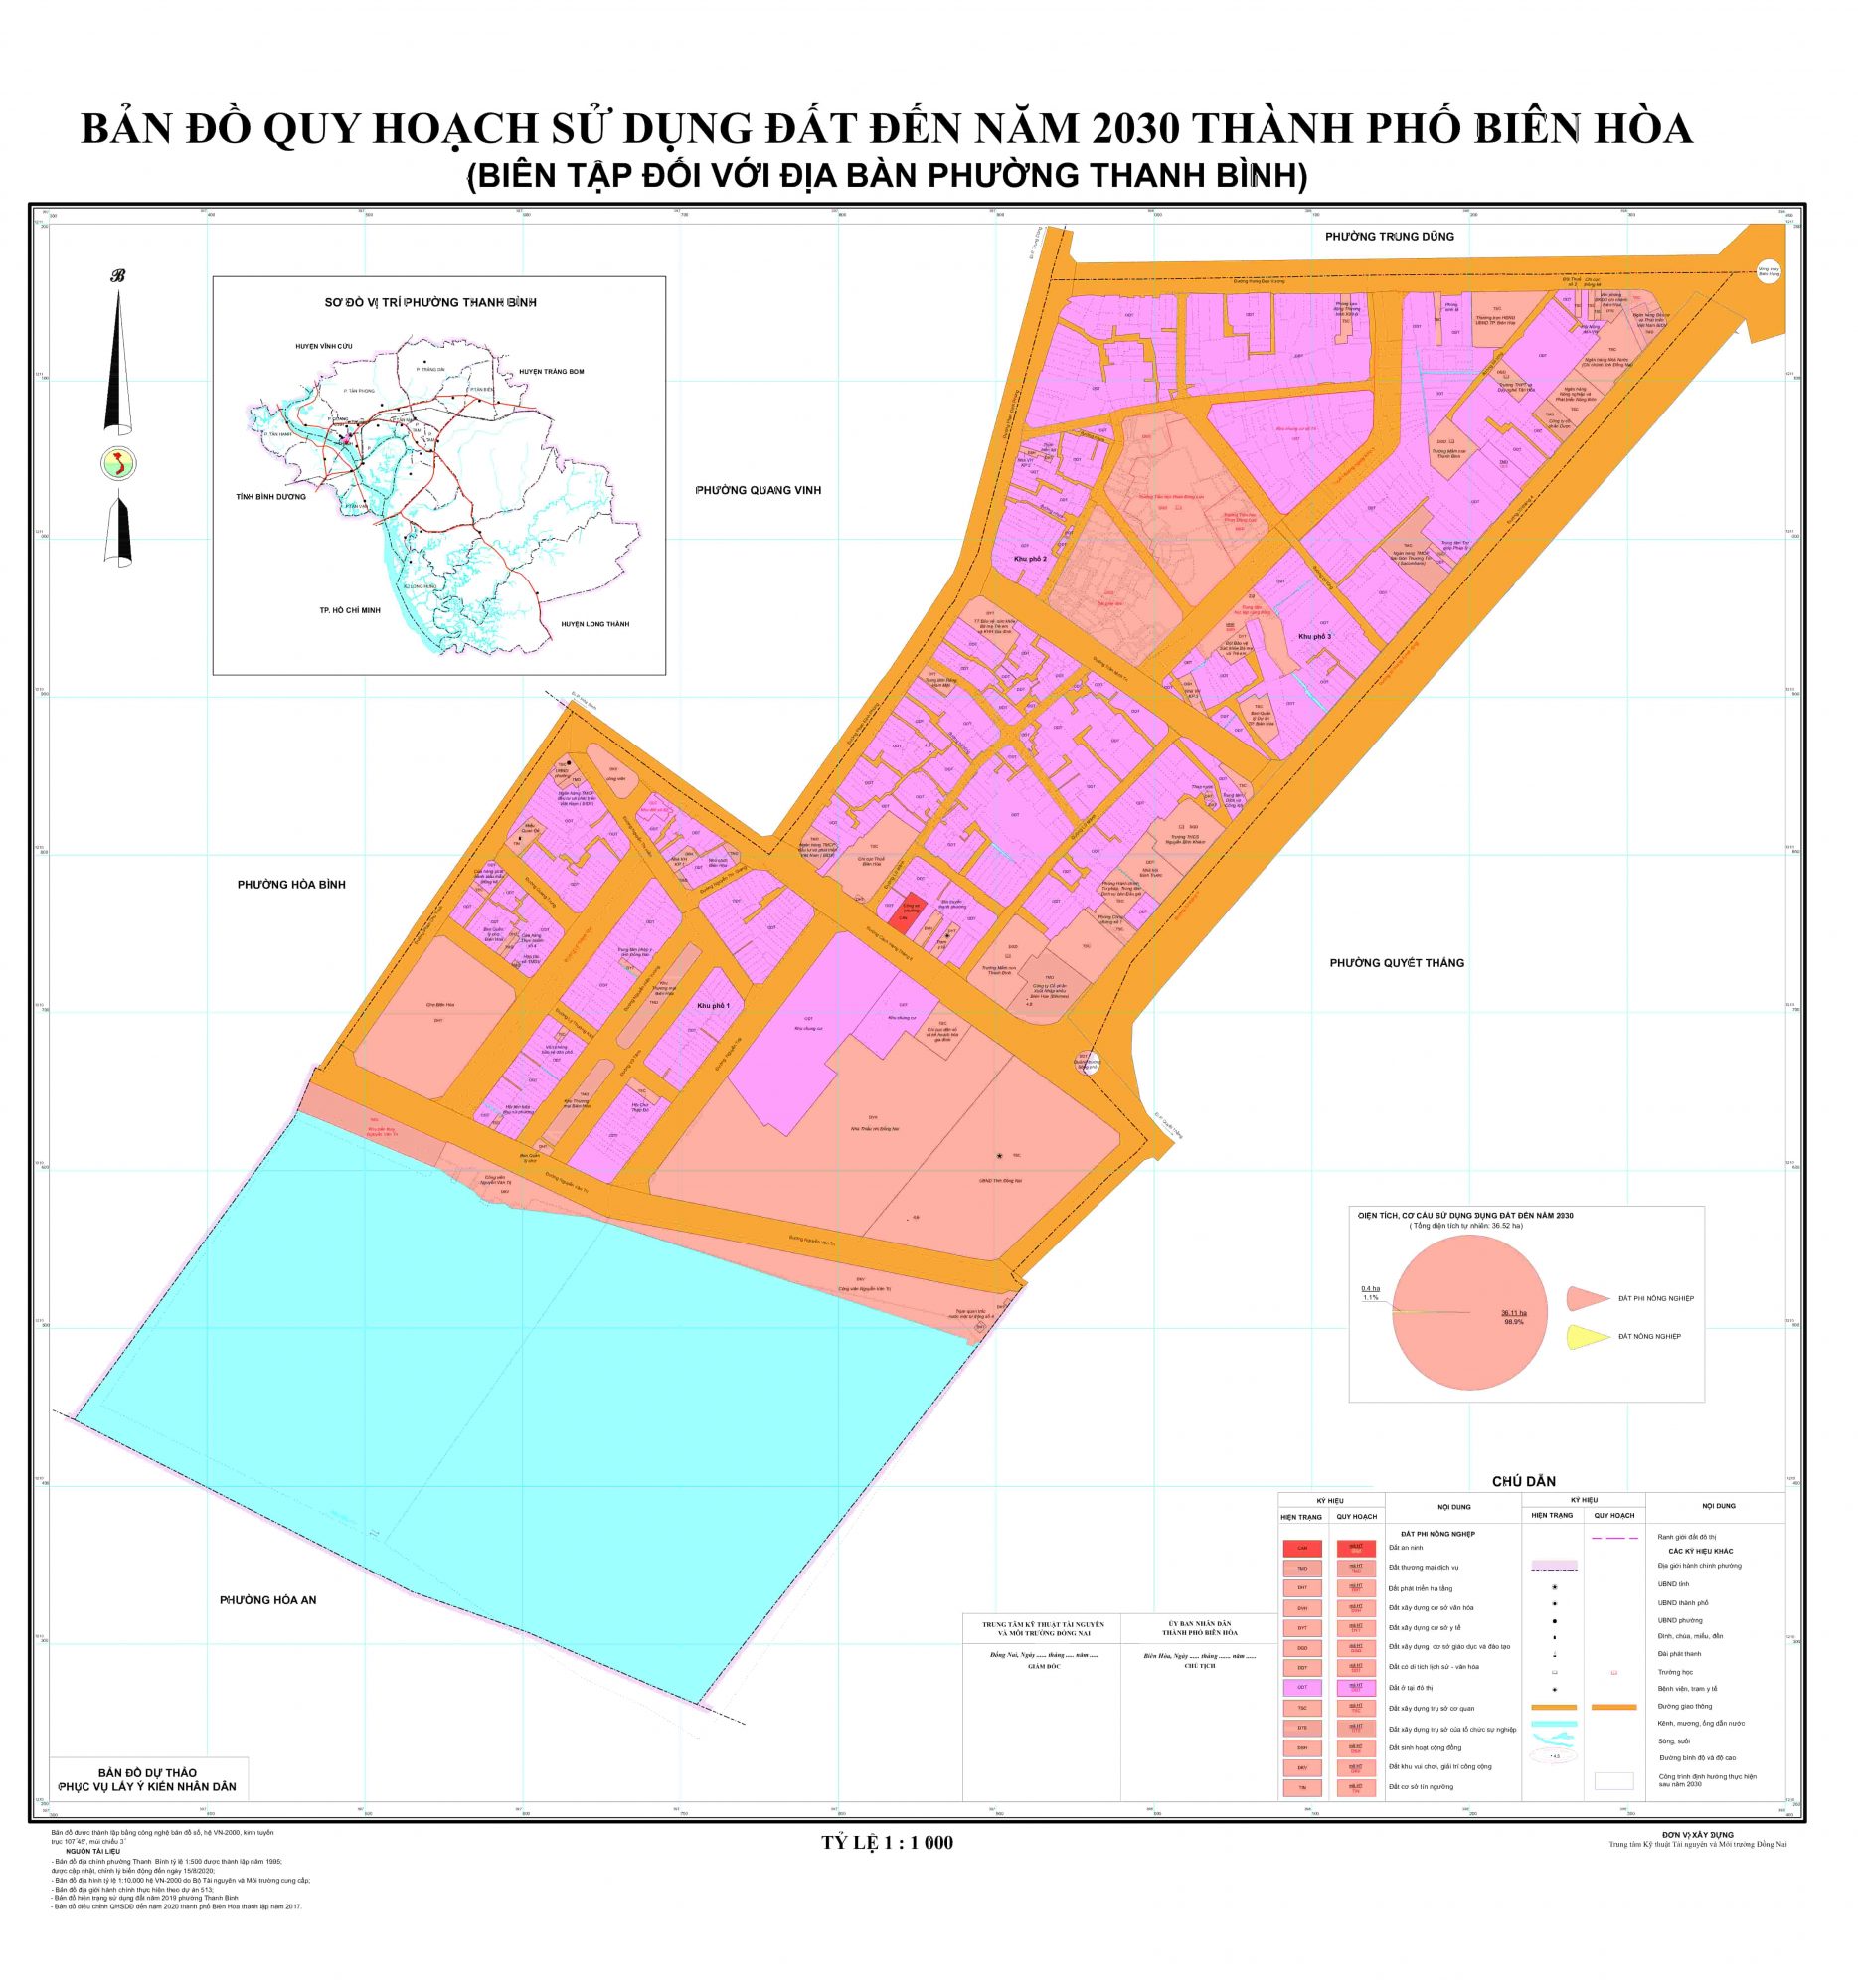 Bản đồ quy hoạch phường Thanh Bình, thành phố Biên Hòa, tỉnh Đồng Nai đến năm 2030